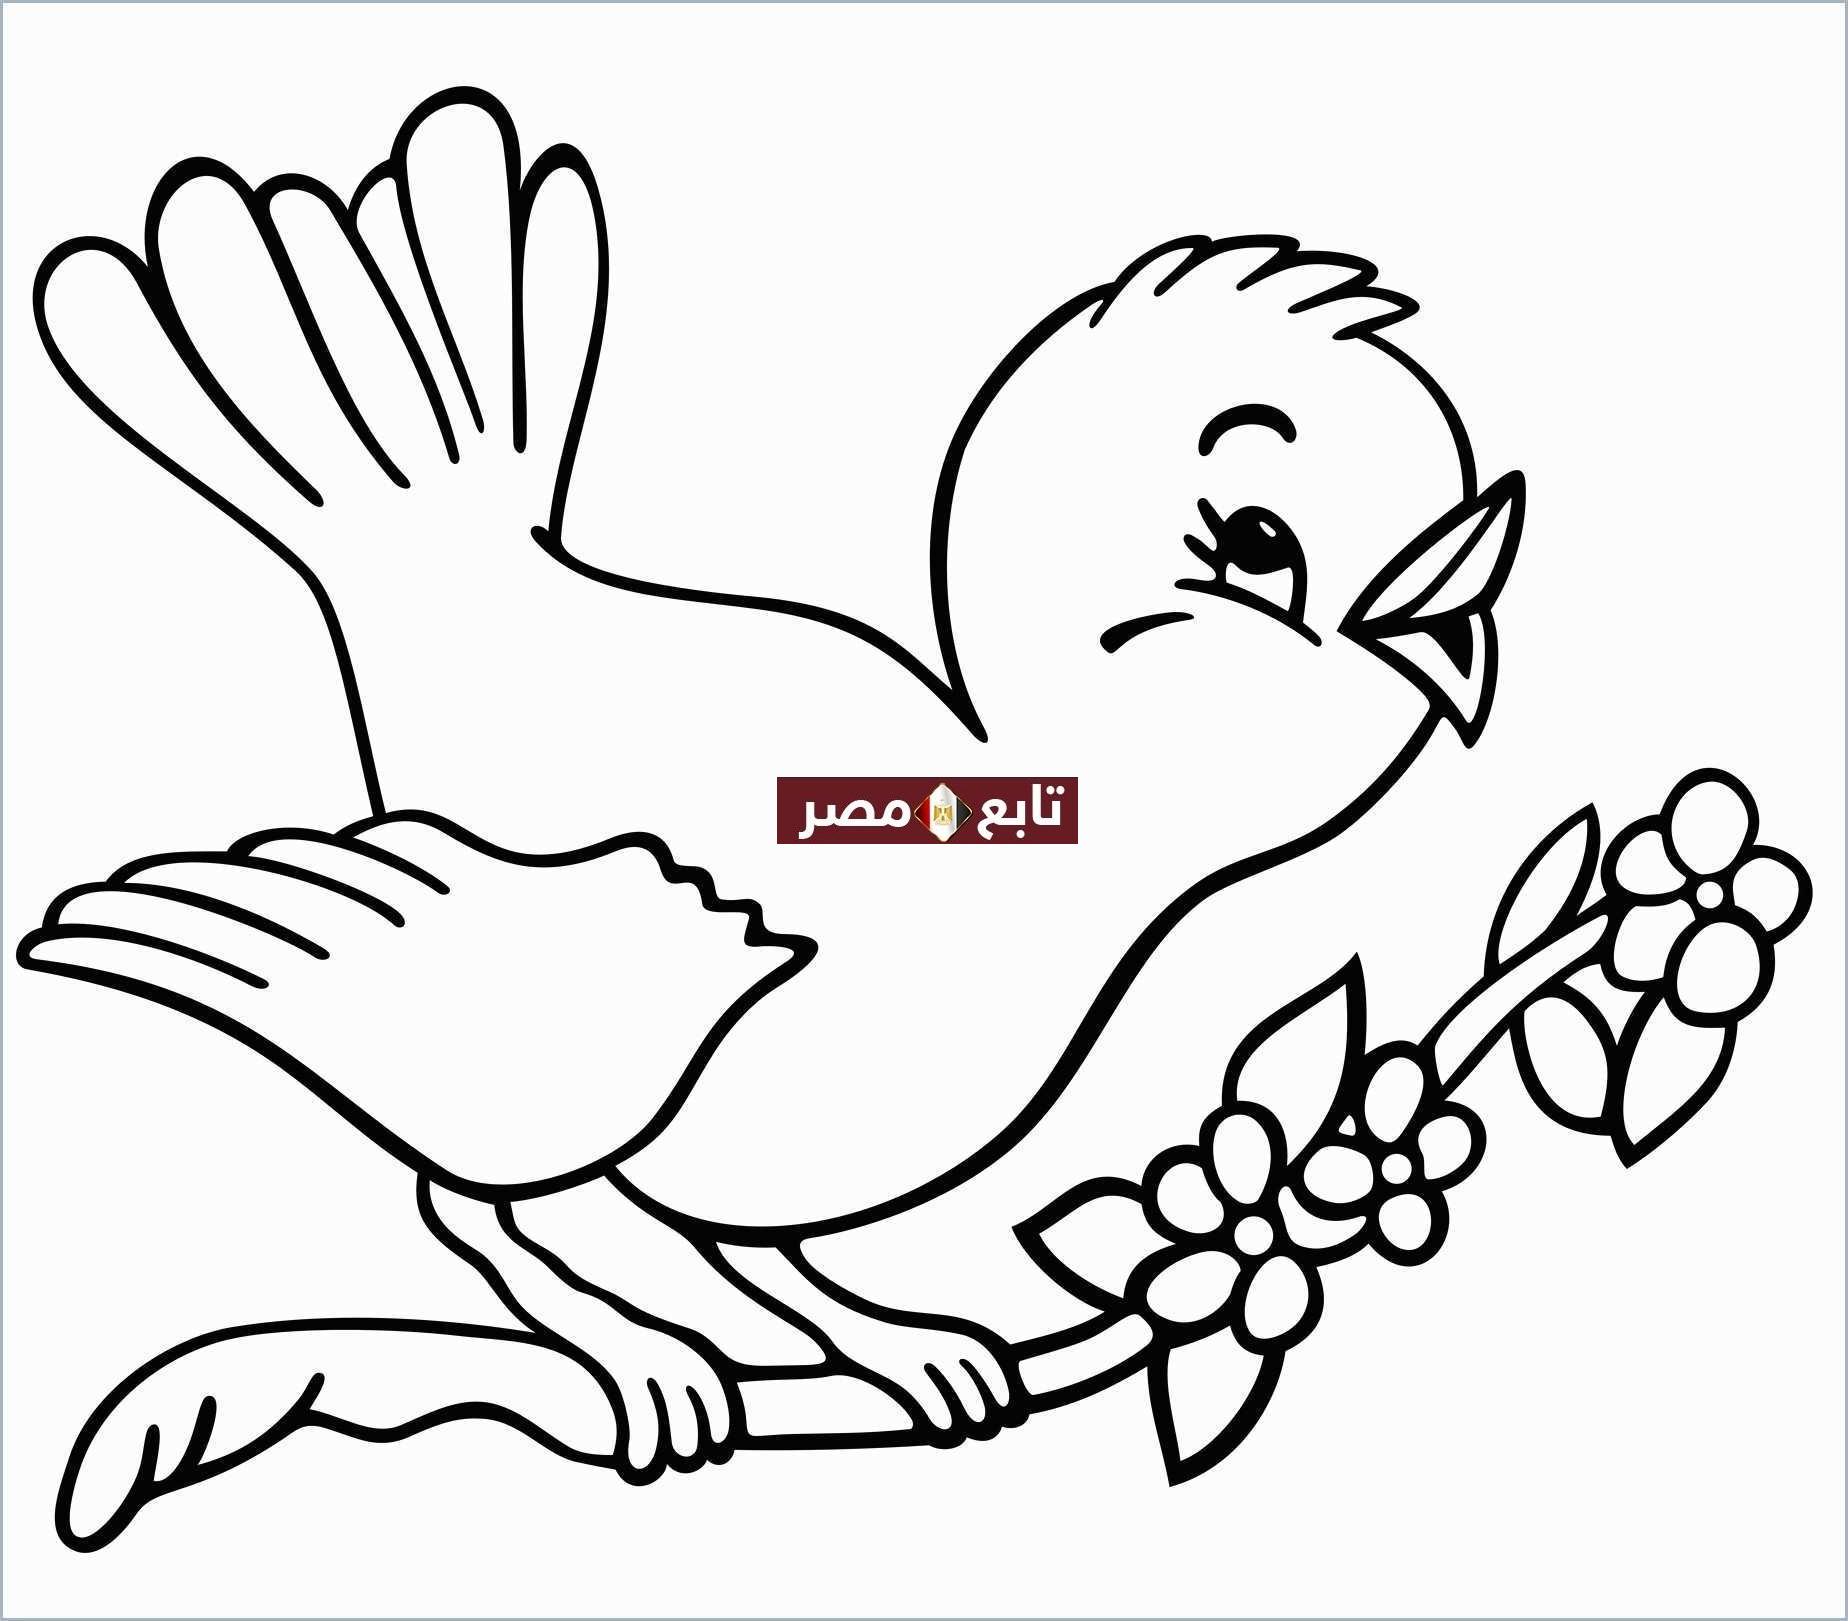 "رسومات" صور تلوين للأطفال pdf مجموعة طيور وحيوانات جاهزة للطباعة